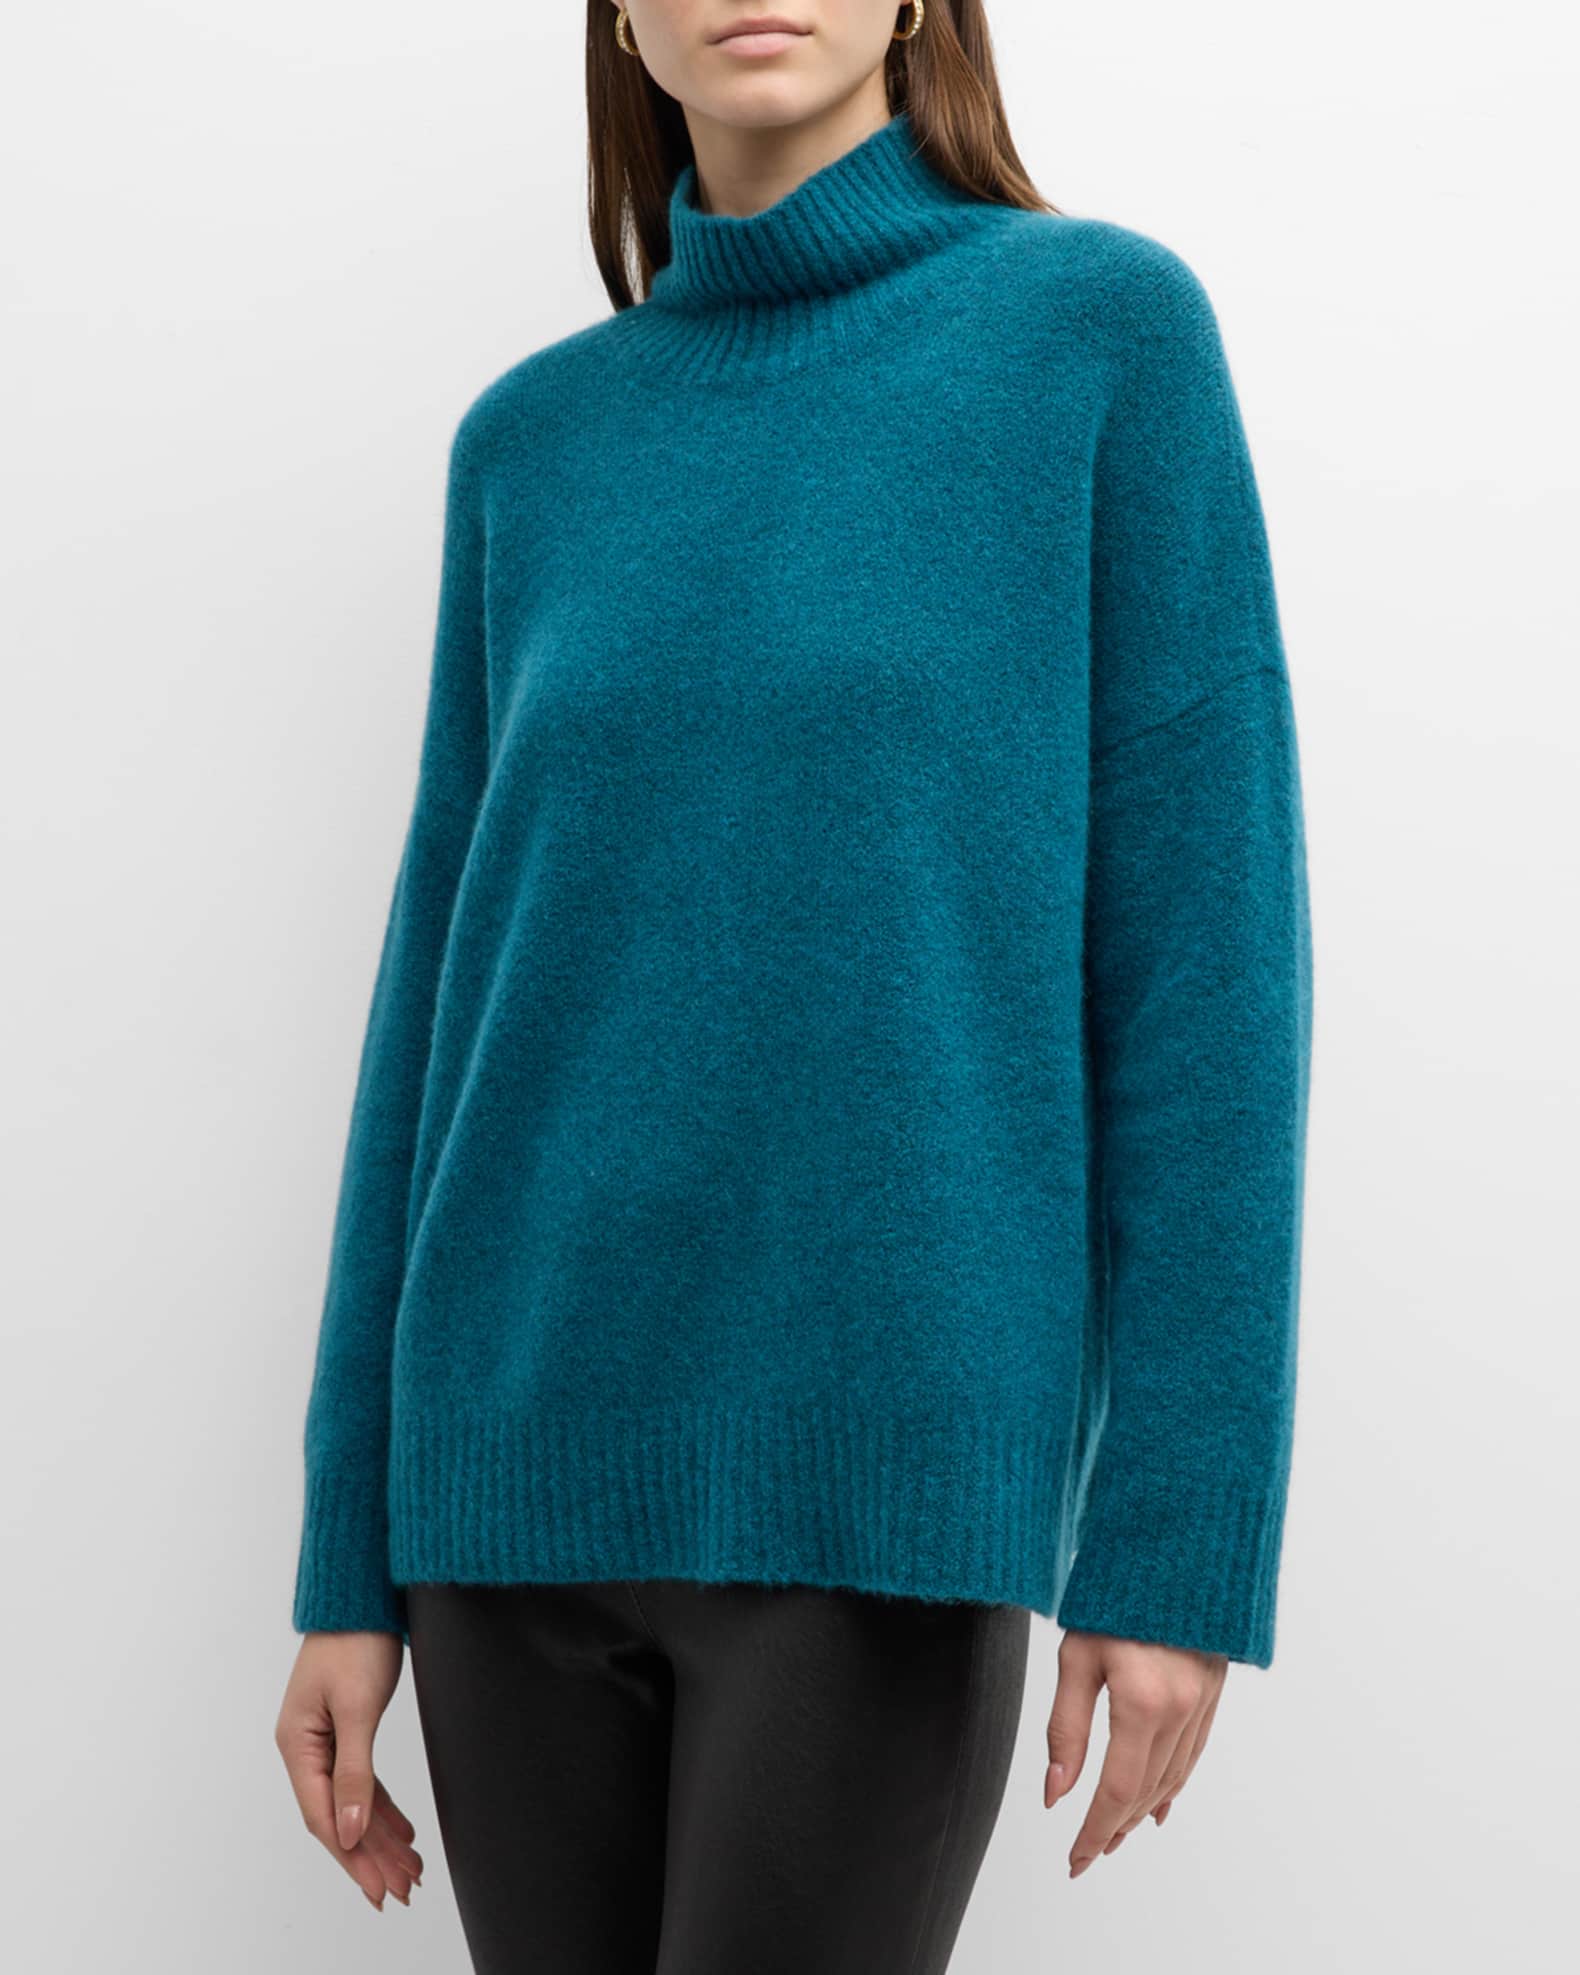 Eileen Fisher Women's Bliss Turtleneck Sweater